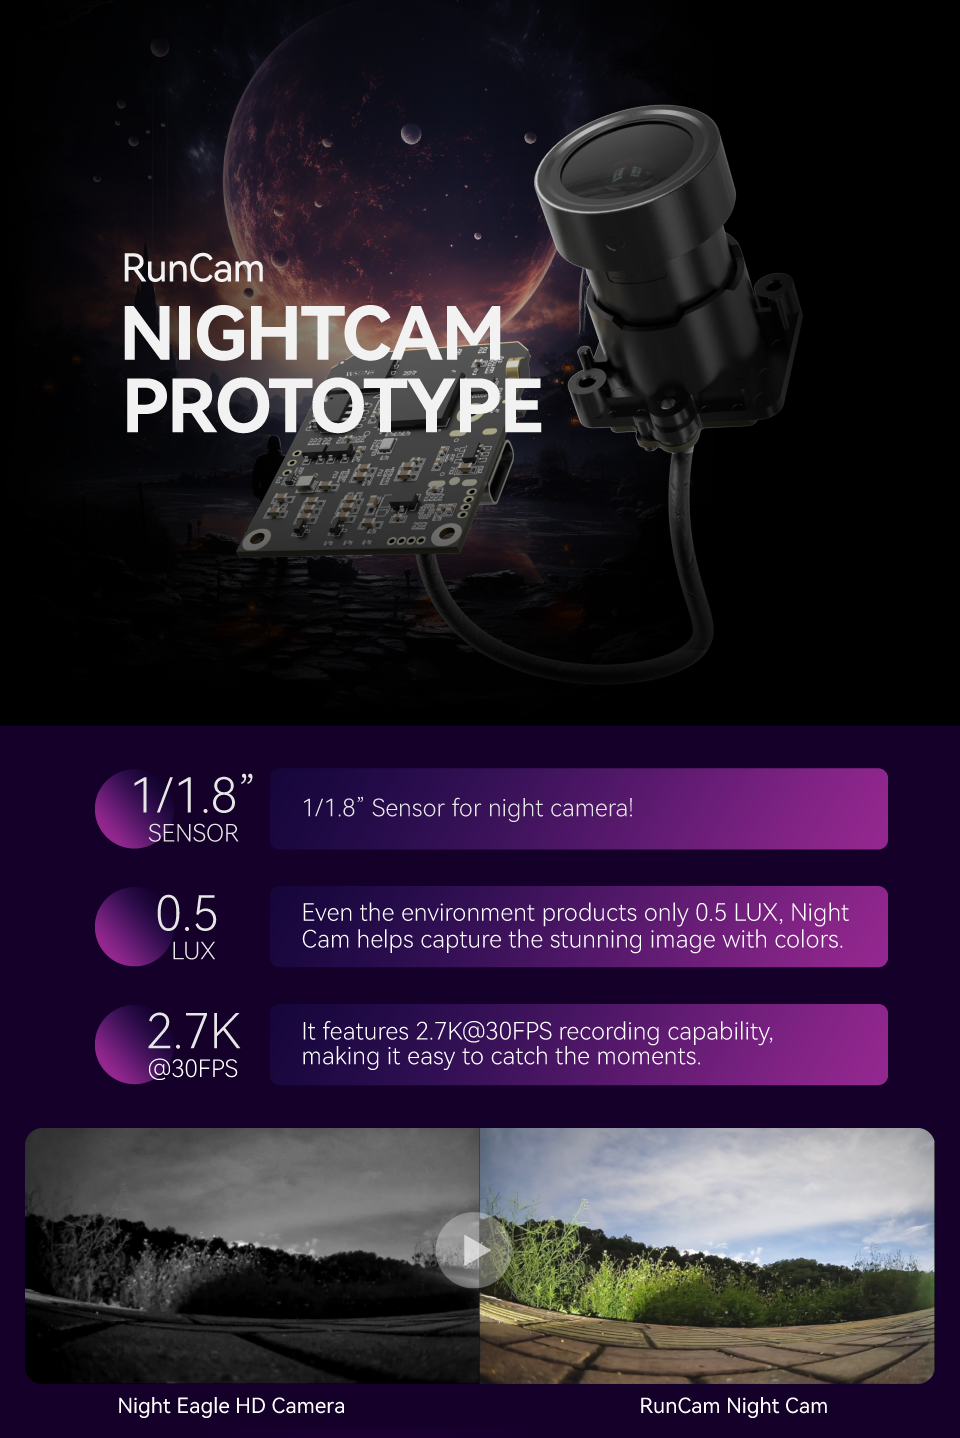 RunCam Night Cam Prototype